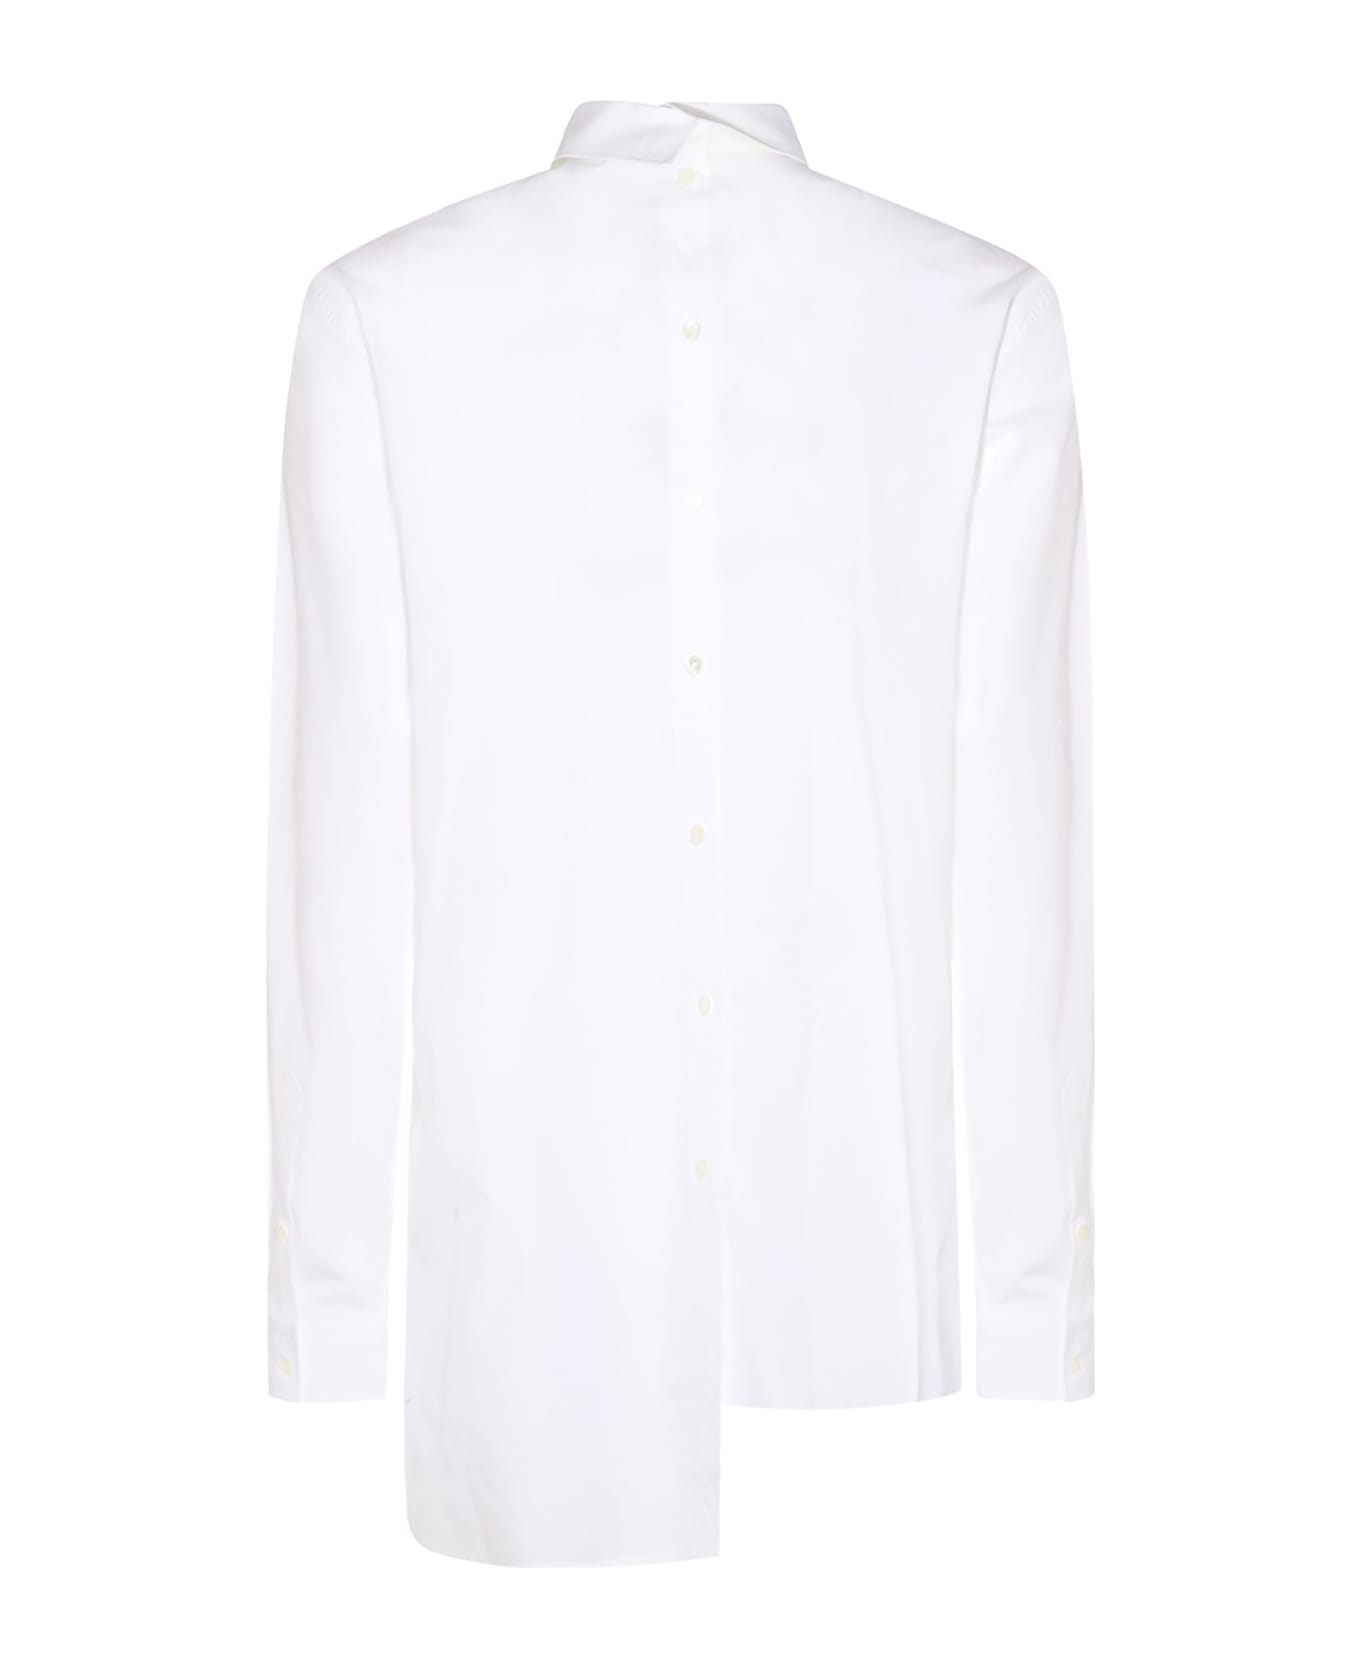 Lanvin Shirts White - White シャツ